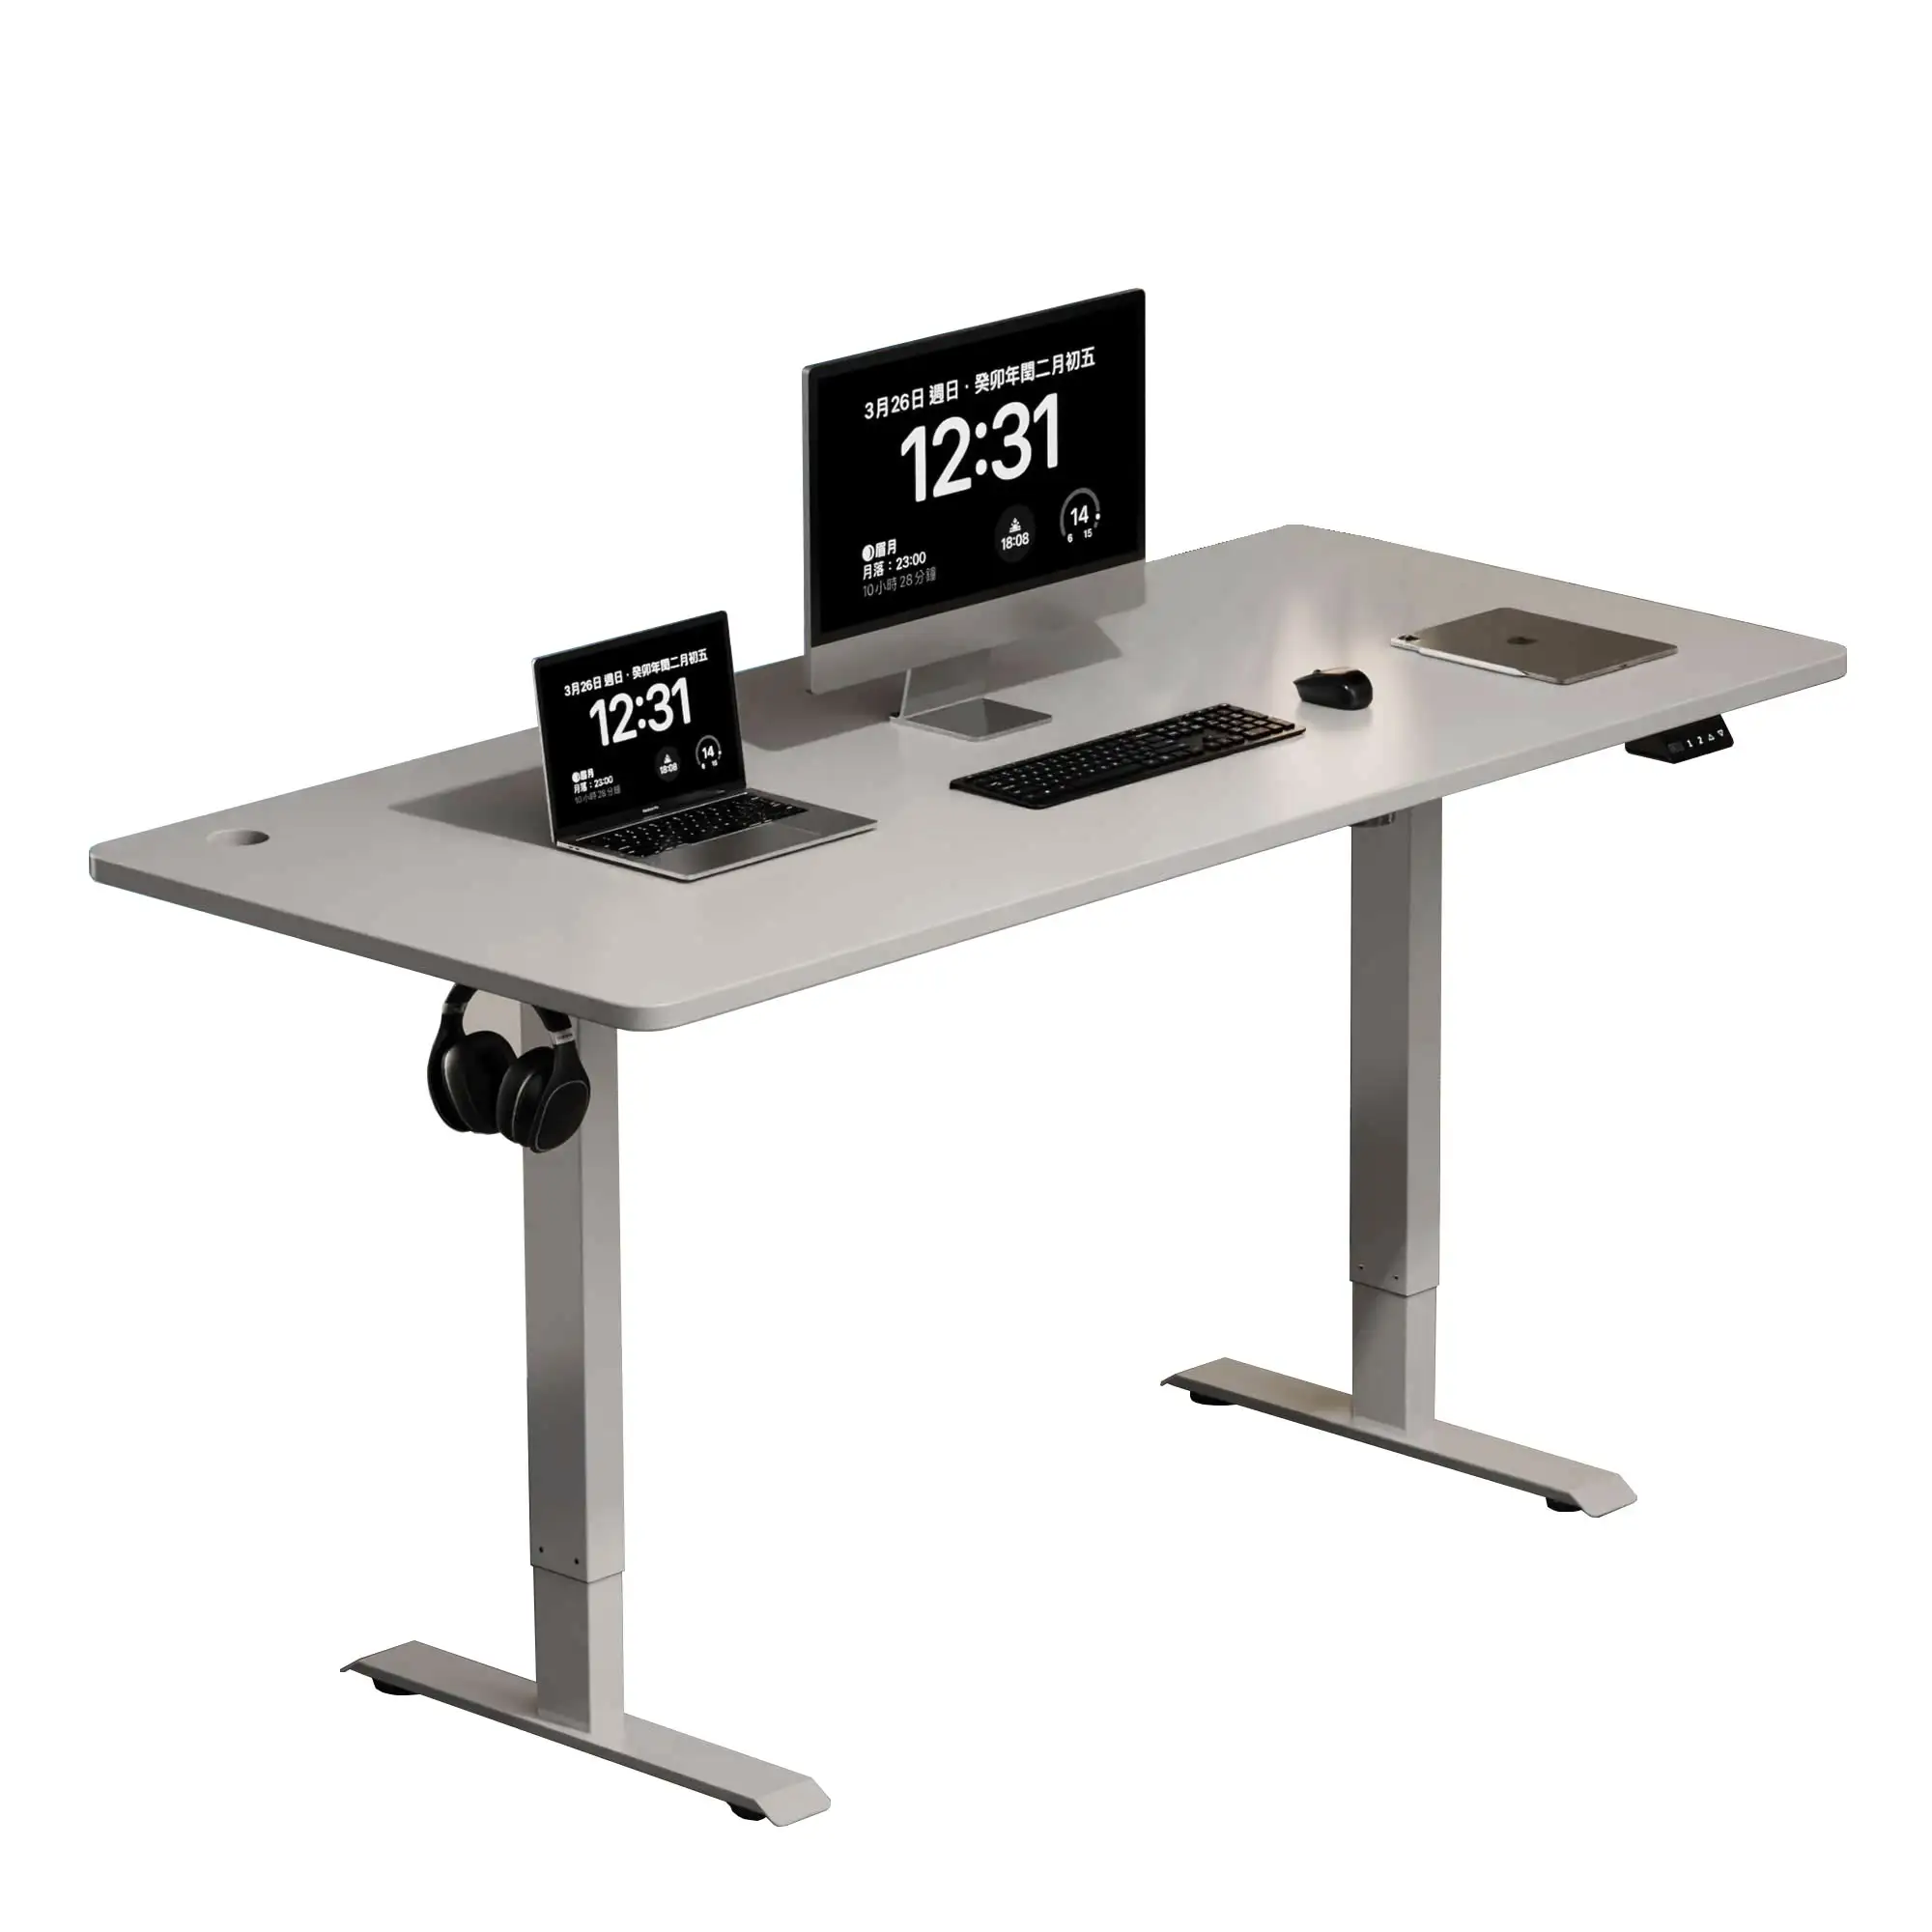 NBHY ayarlanabilir yükseklik masa çerçevesi tek motorlu ofis mobilya masa elektrikli asansör bilgisayar masası durmak için oturmak